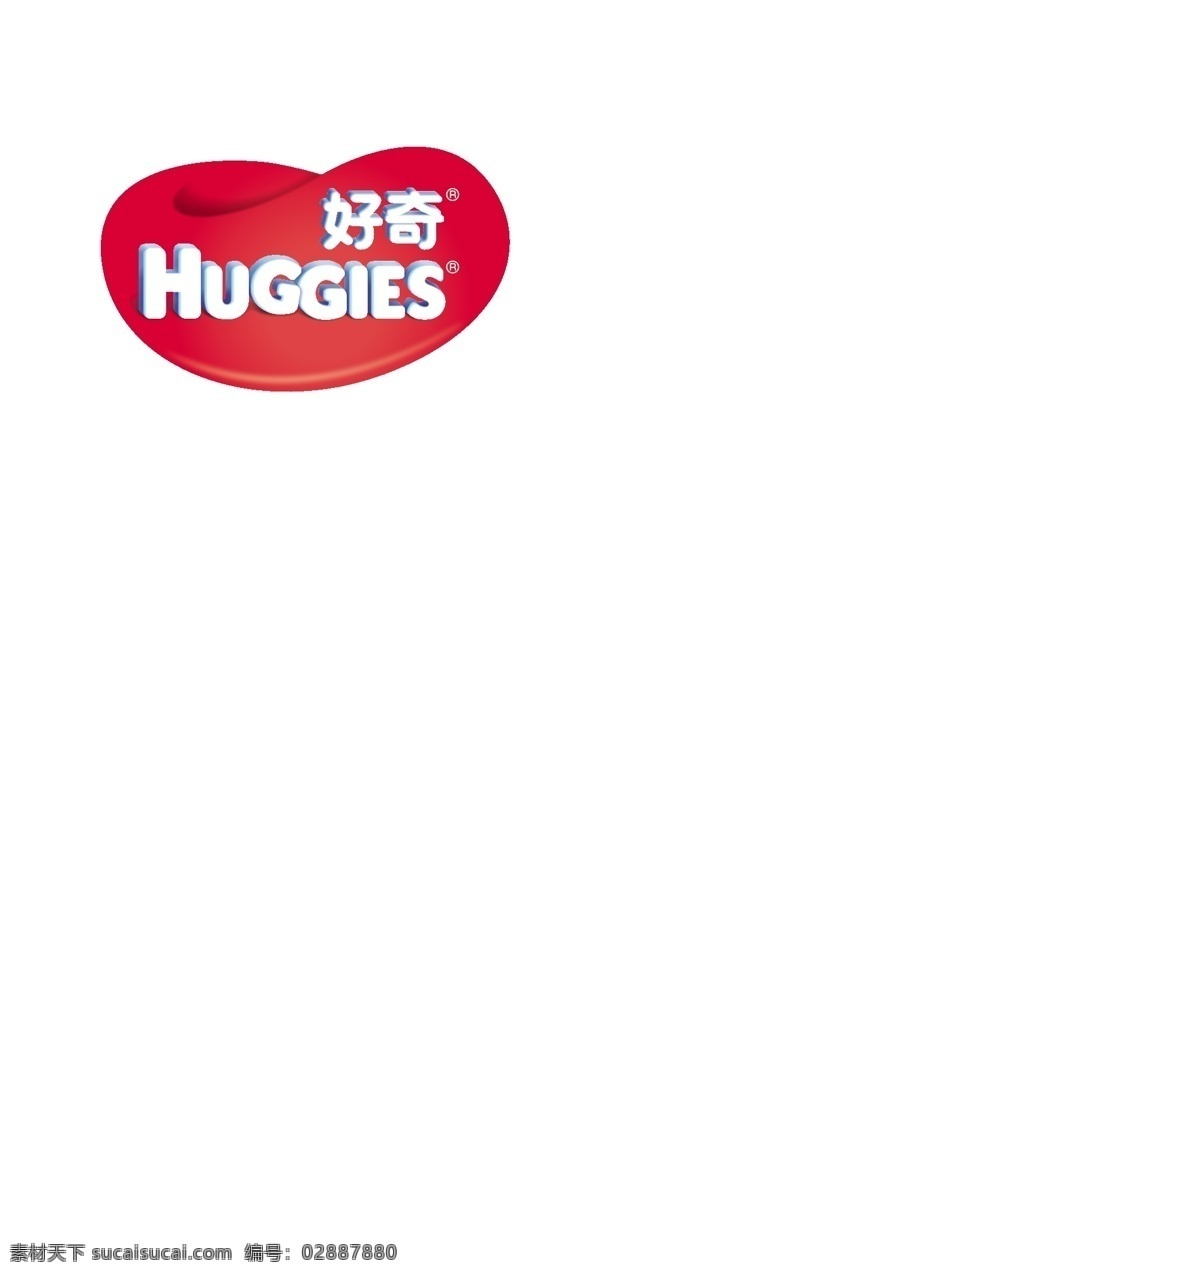 好奇 huggies 标志 纸尿 裤品牌 纸尿裤品牌 logo设计